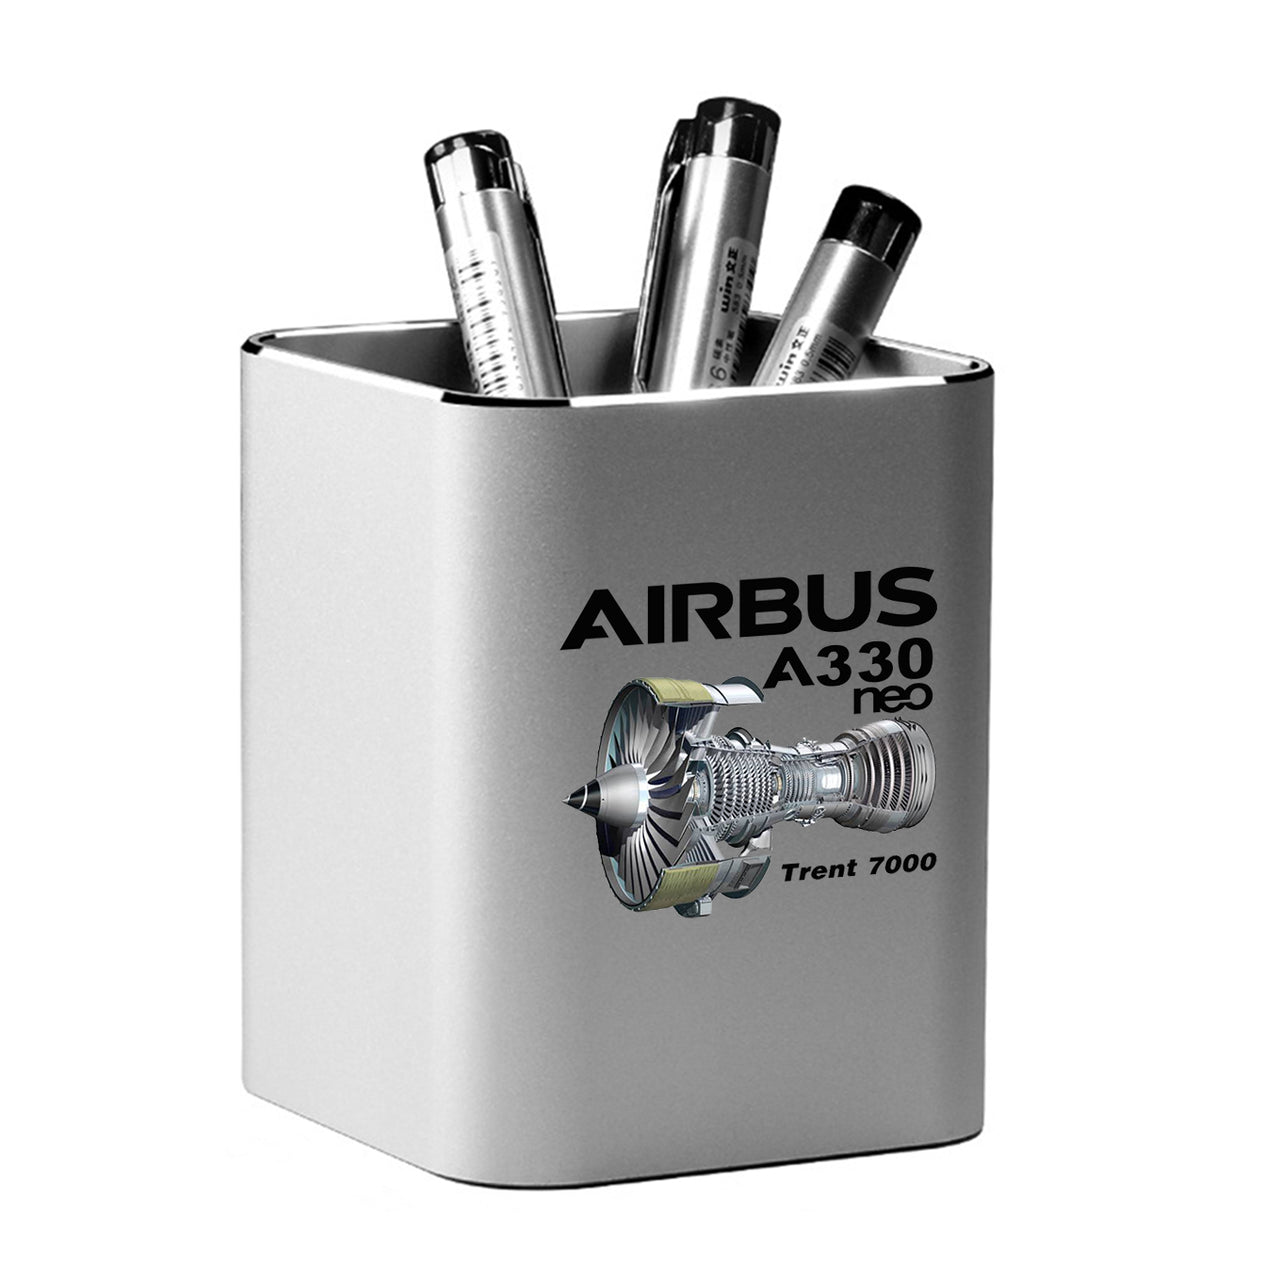 Airbus A330neo & Trent 7000 Designed Aluminium Alloy Pen Holders